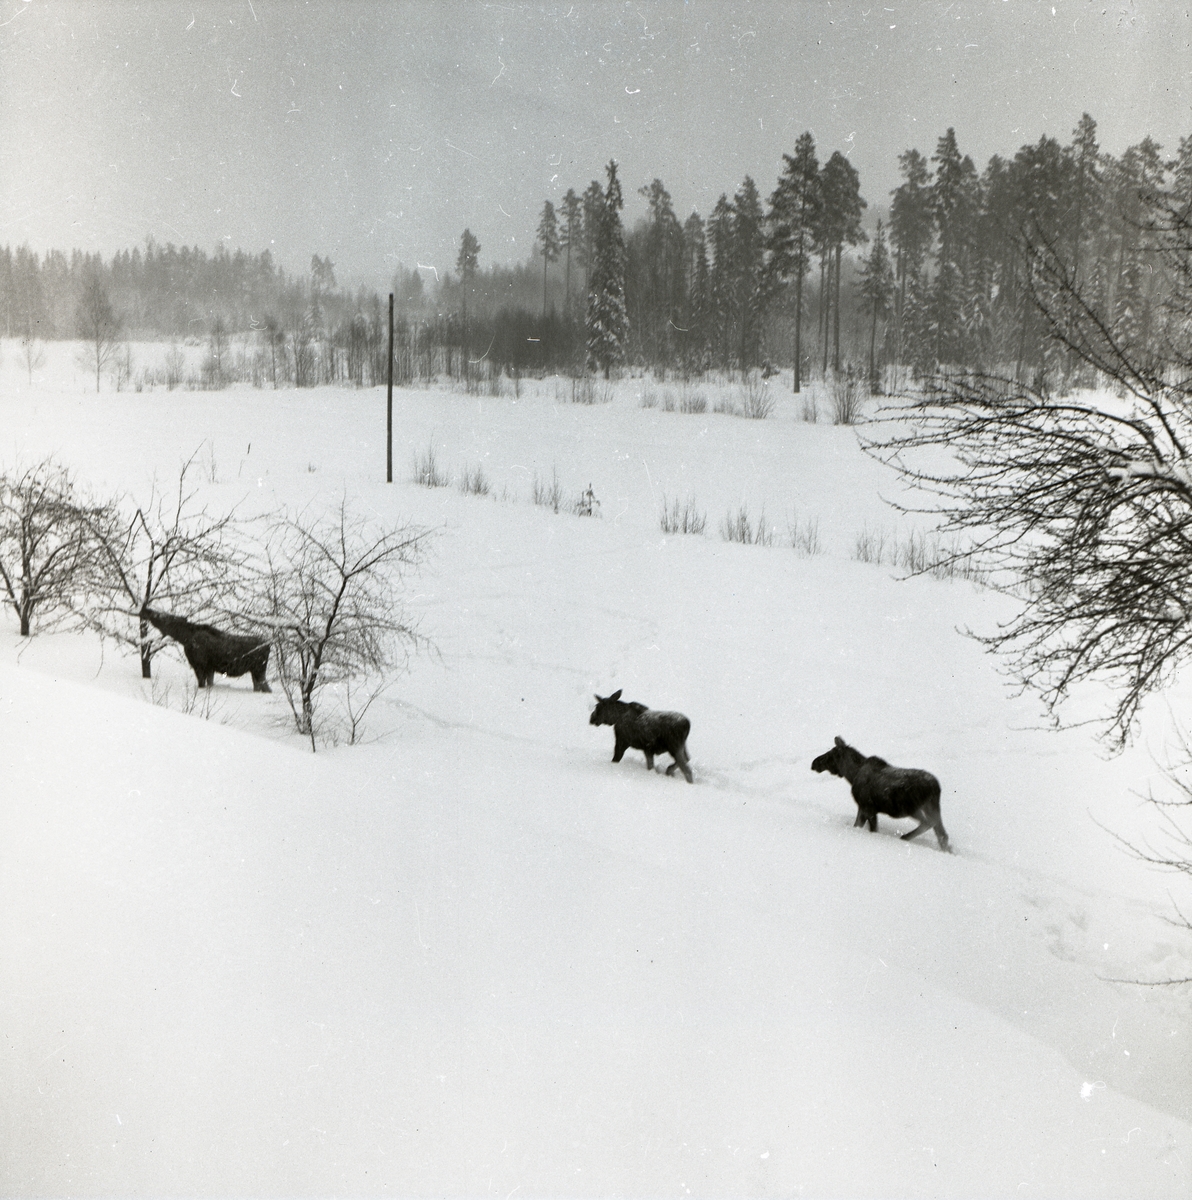 Tre älgar står i ett snöigt landskap och en av älgarna sträcker sig mot ...